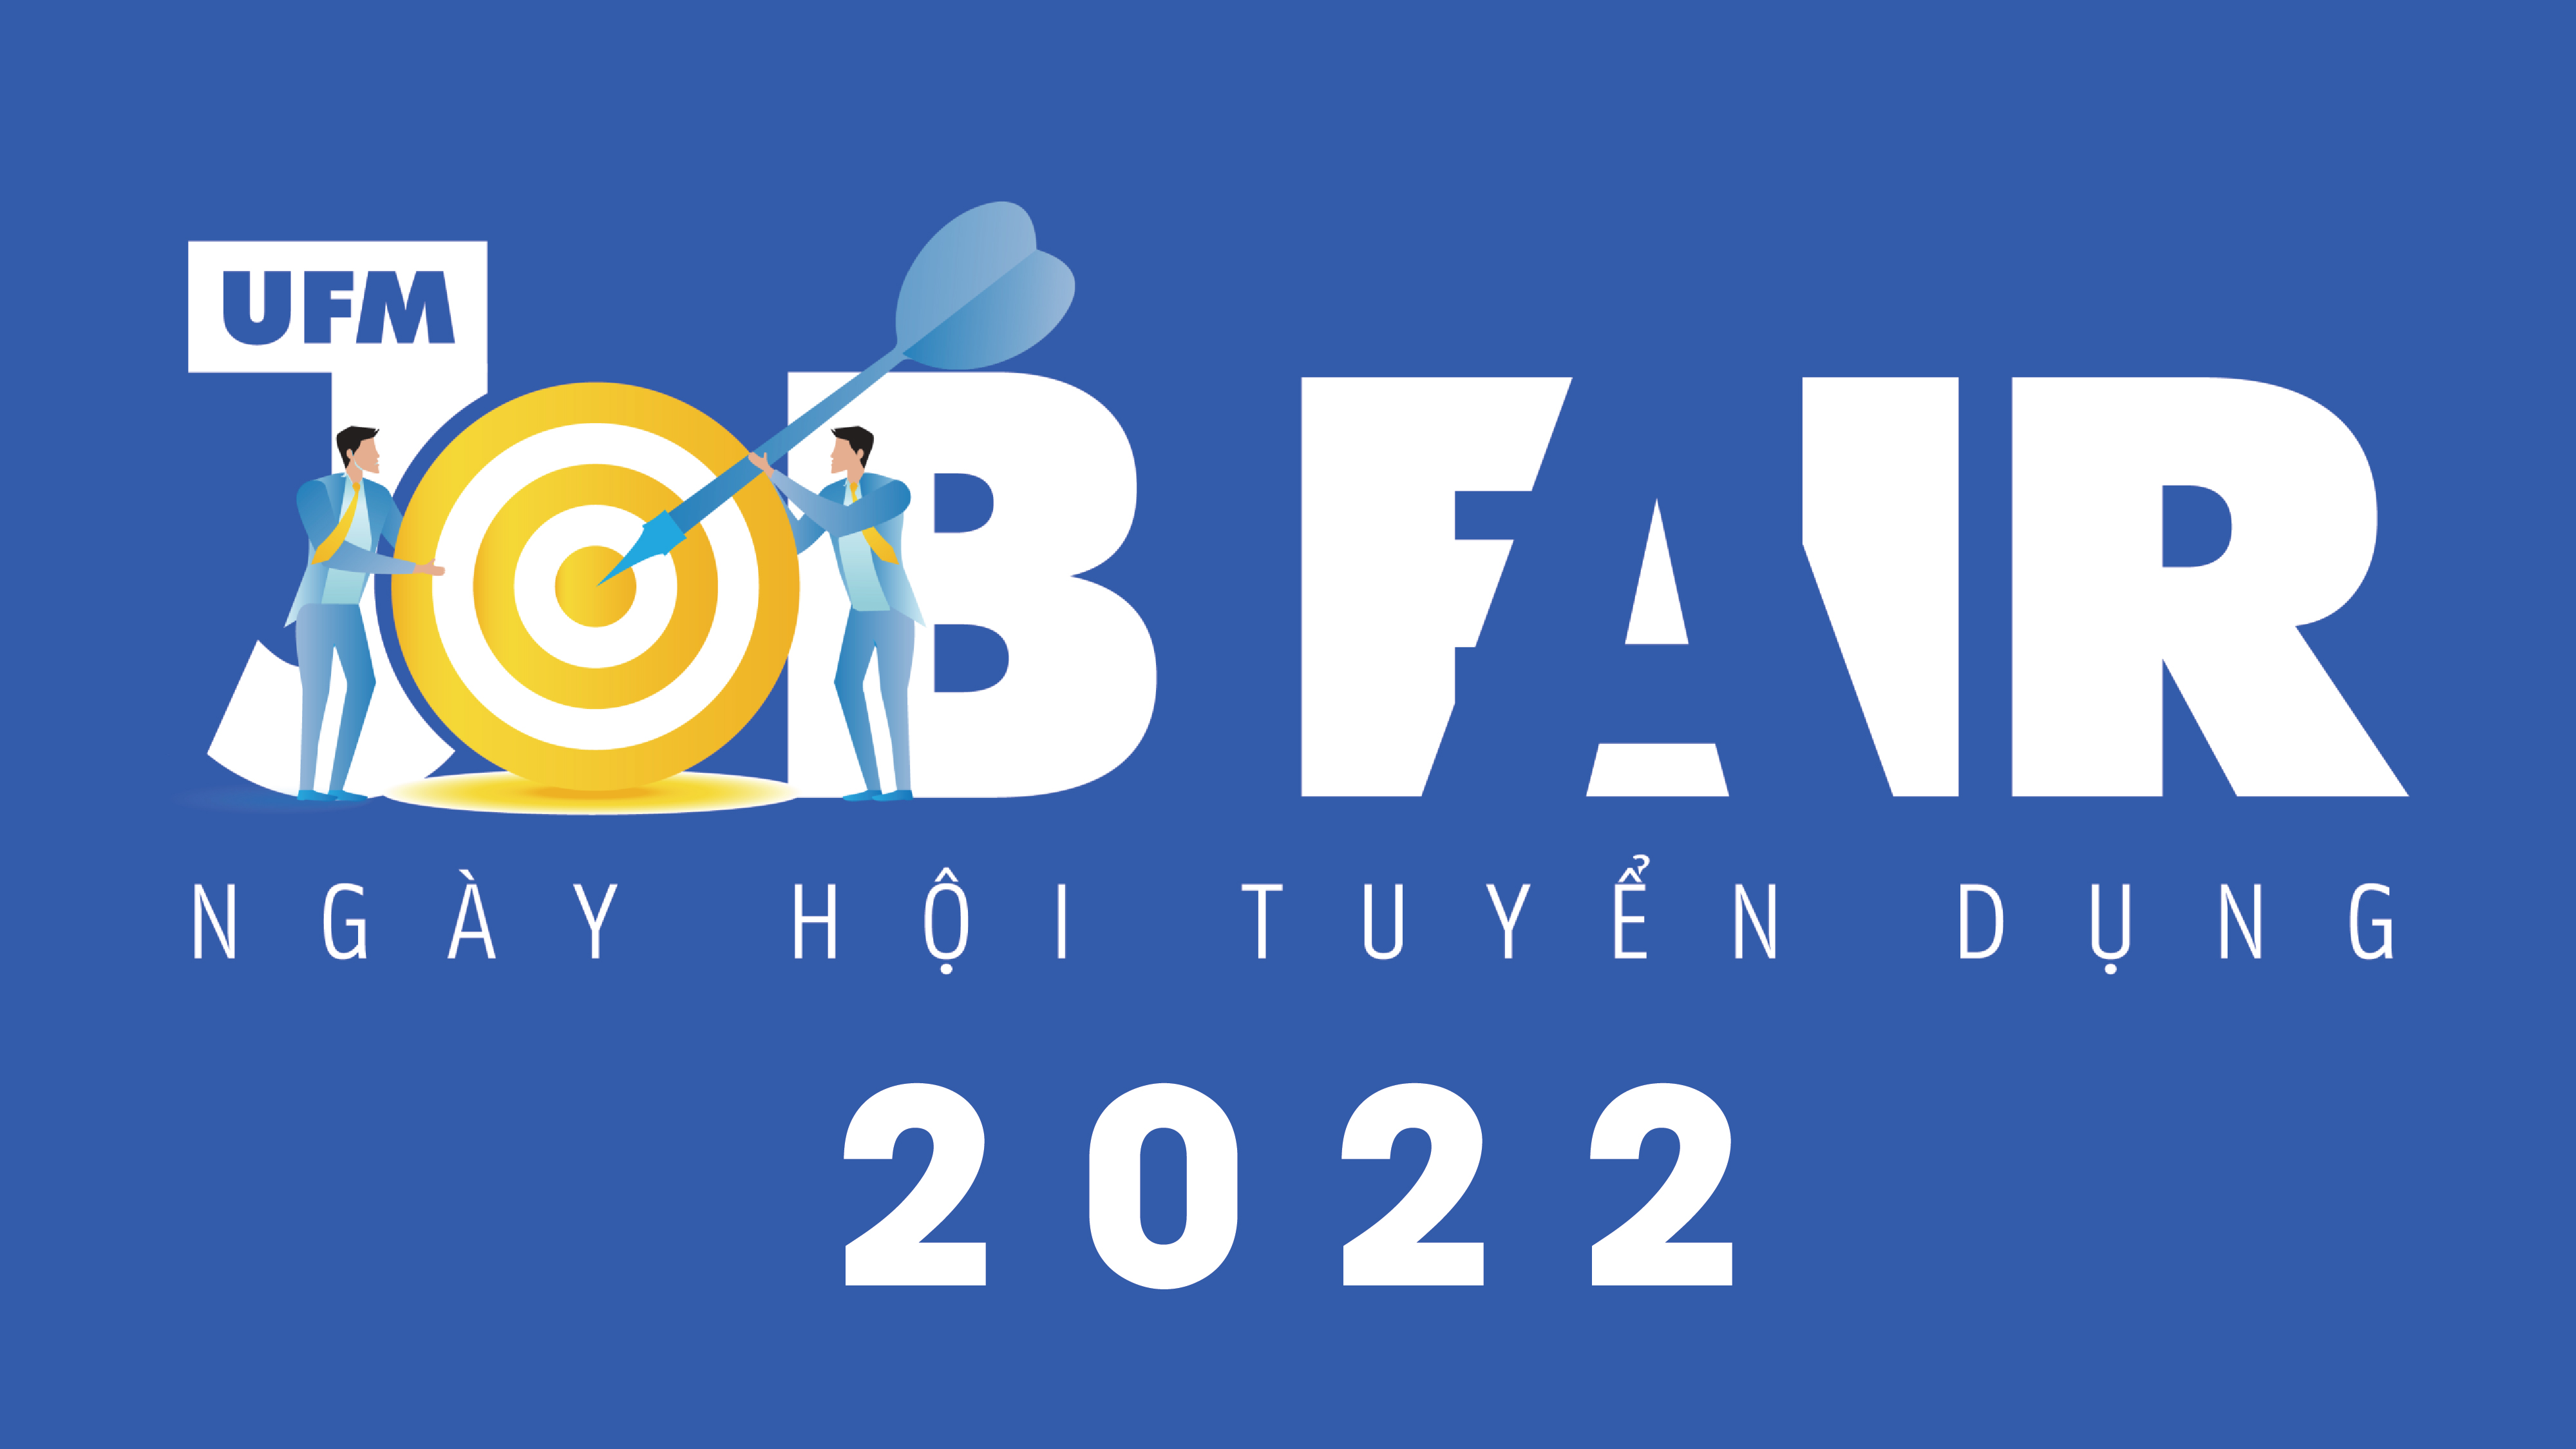 [Cập nhật] Doanh nghiệp tham gia Ngày hội Tuyển dụng - JOB FAIR UFM 2022